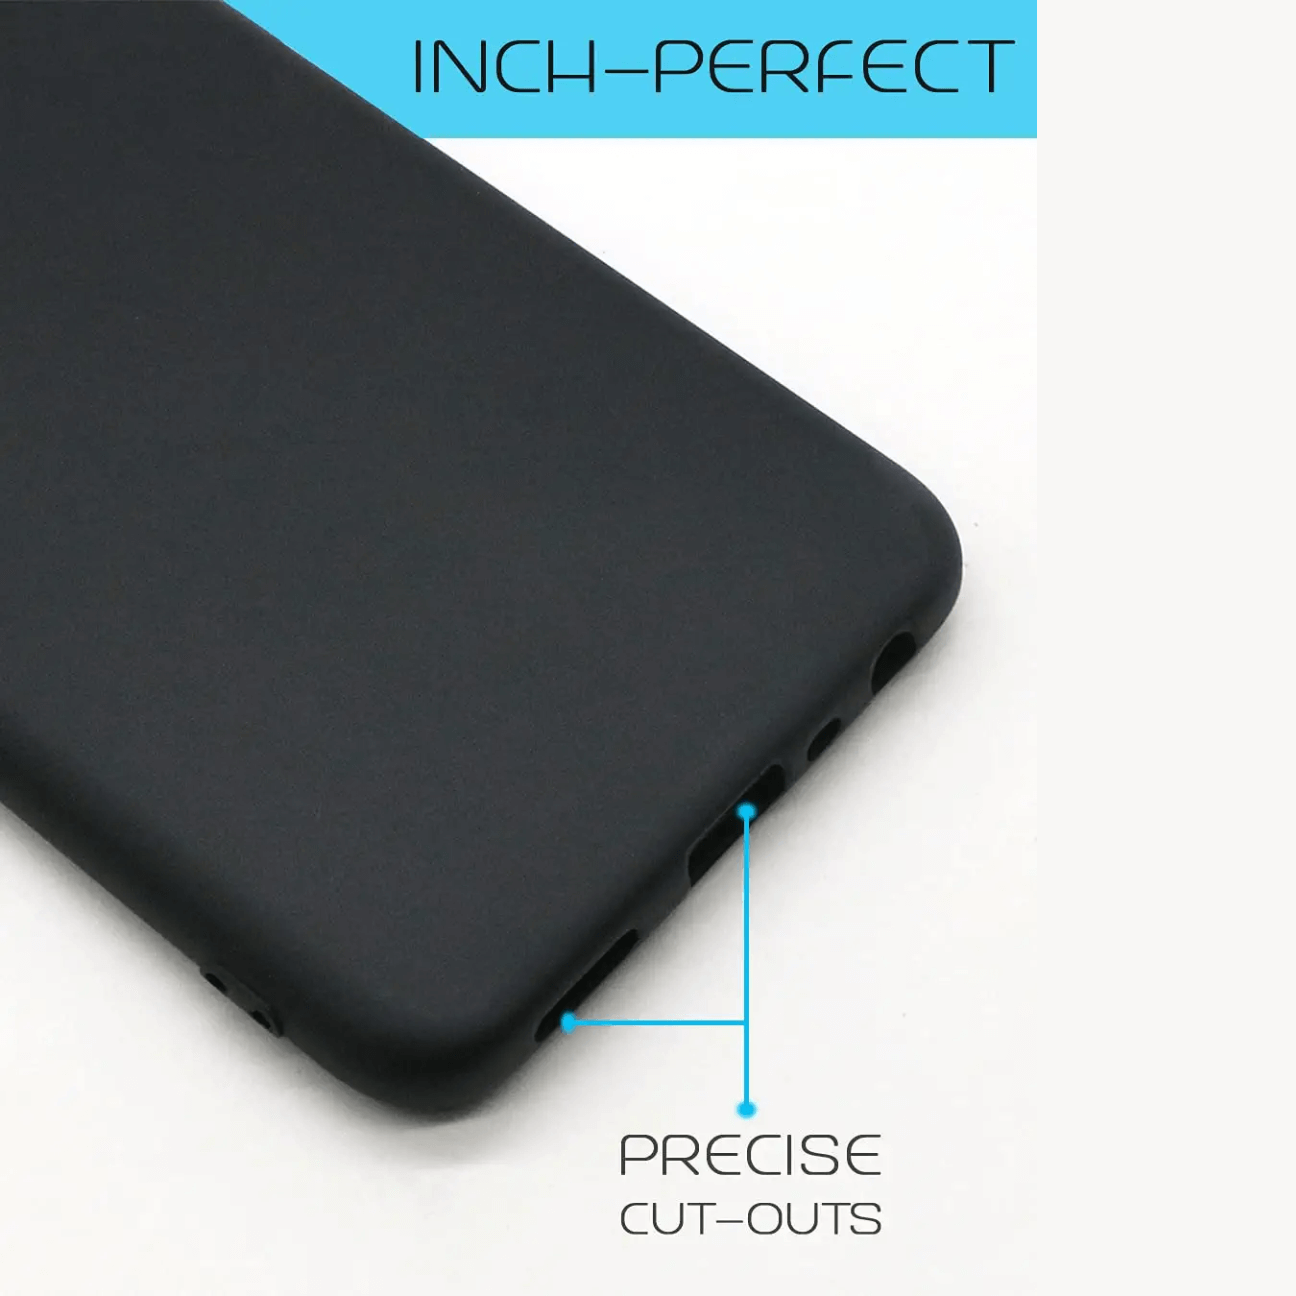 Xiaomi Redmi Note 4 Black Soft Silicone Phone Case Image